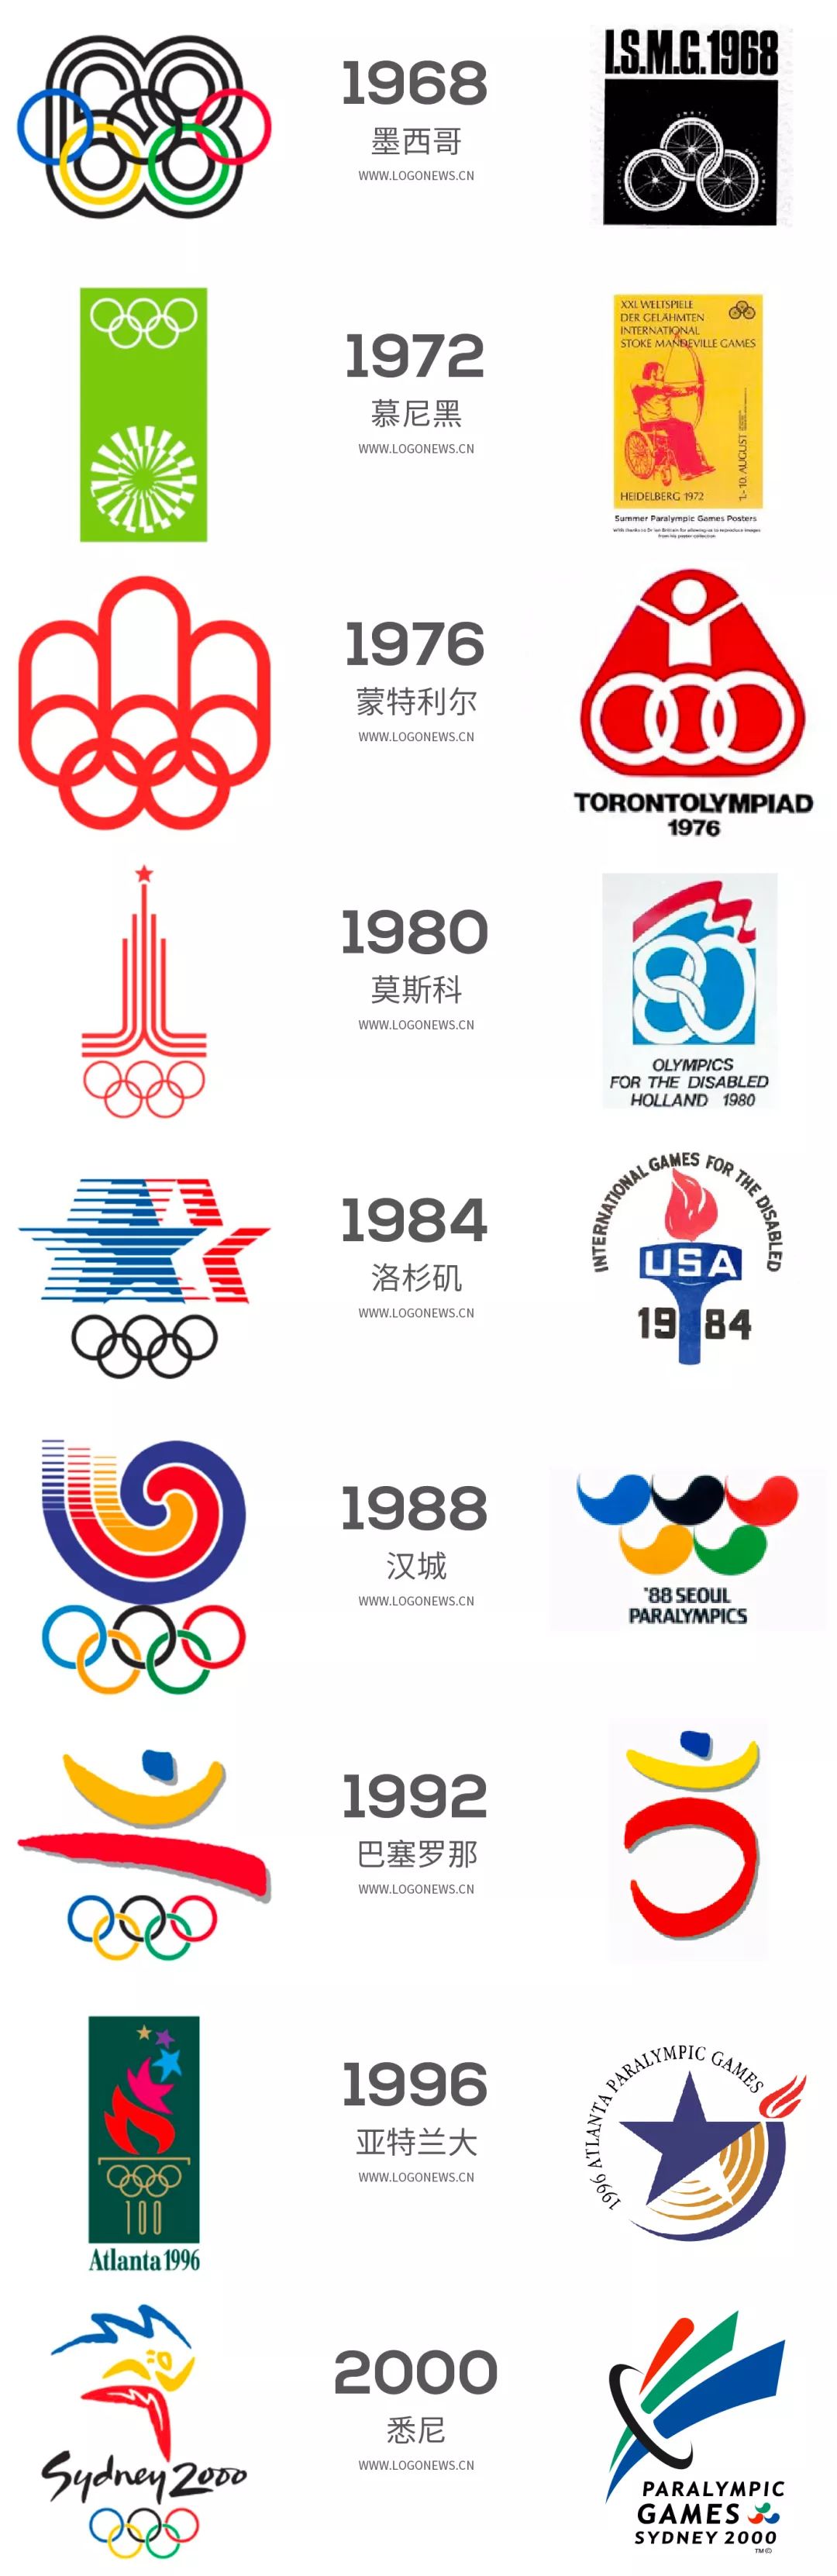 文末附上历届夏季奥运会和残奥会会徽设计,注意的是,1960年残奥会才